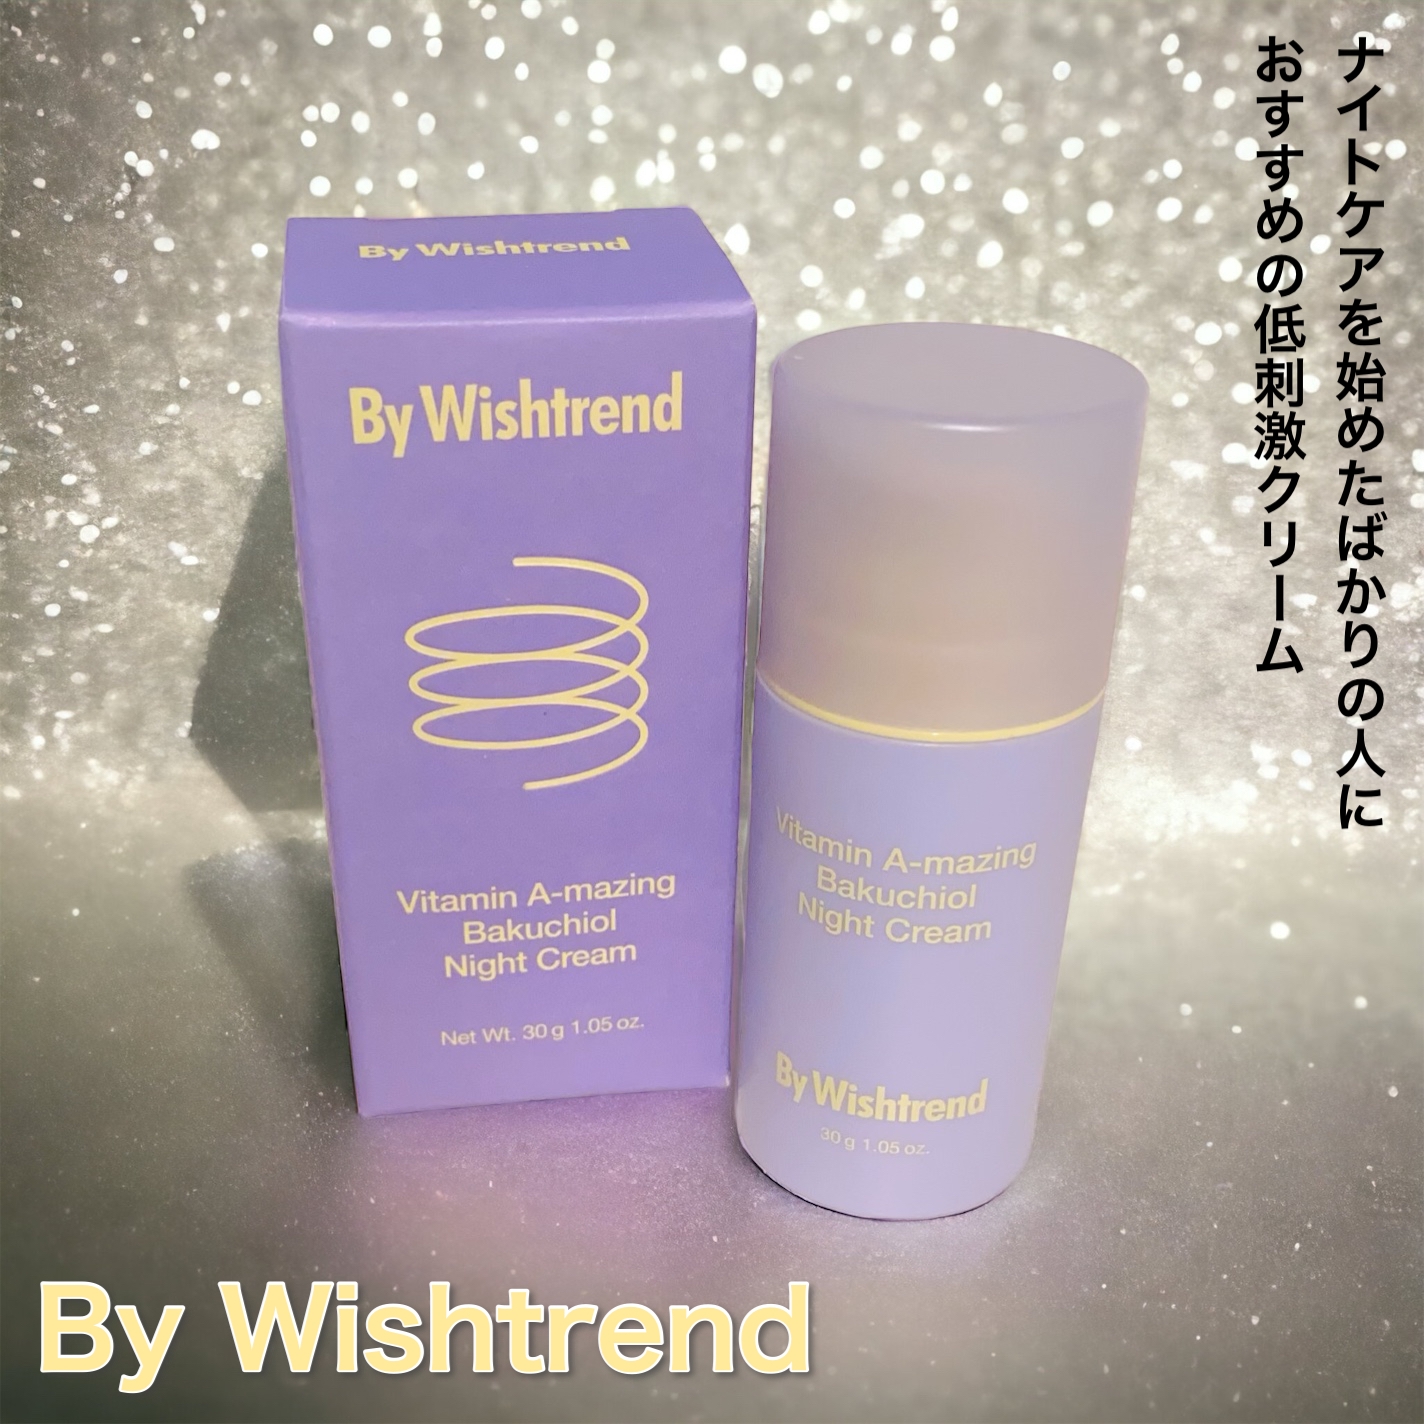 By Wishtrend(バイウィッシュトレンド) ビタミンA-mazingバクチオールナイトクリームの良い点・メリットに関するふっきーさんの口コミ画像1